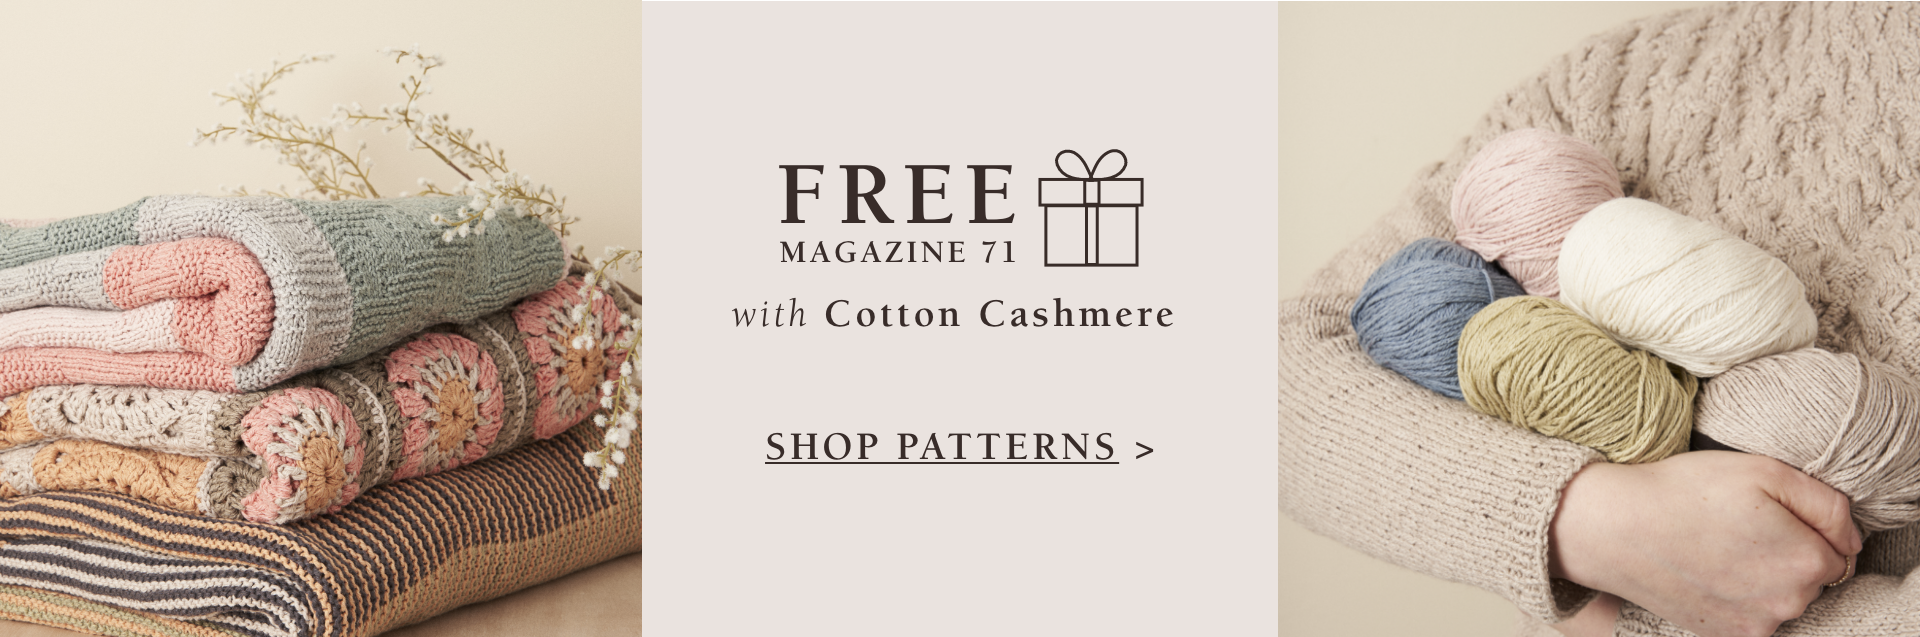 Cotton Cashmere Patterns